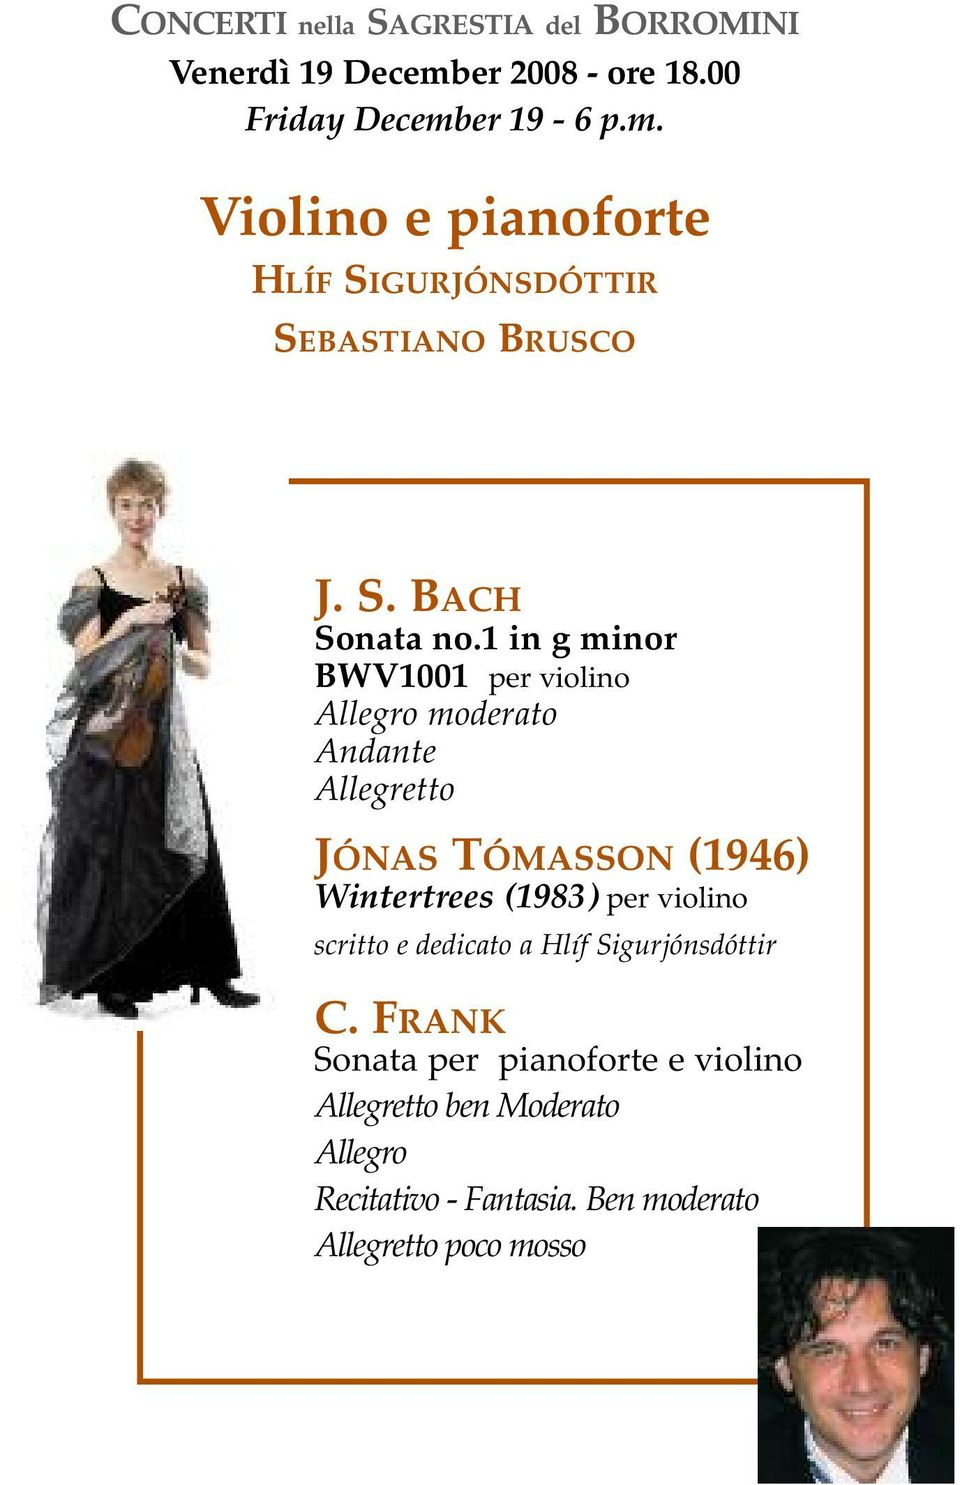 1 in g minor BWV1001 per violino Allegro moderato Andante Allegretto JÓNAS TÓMASSON (1946) Wintertrees (1983)